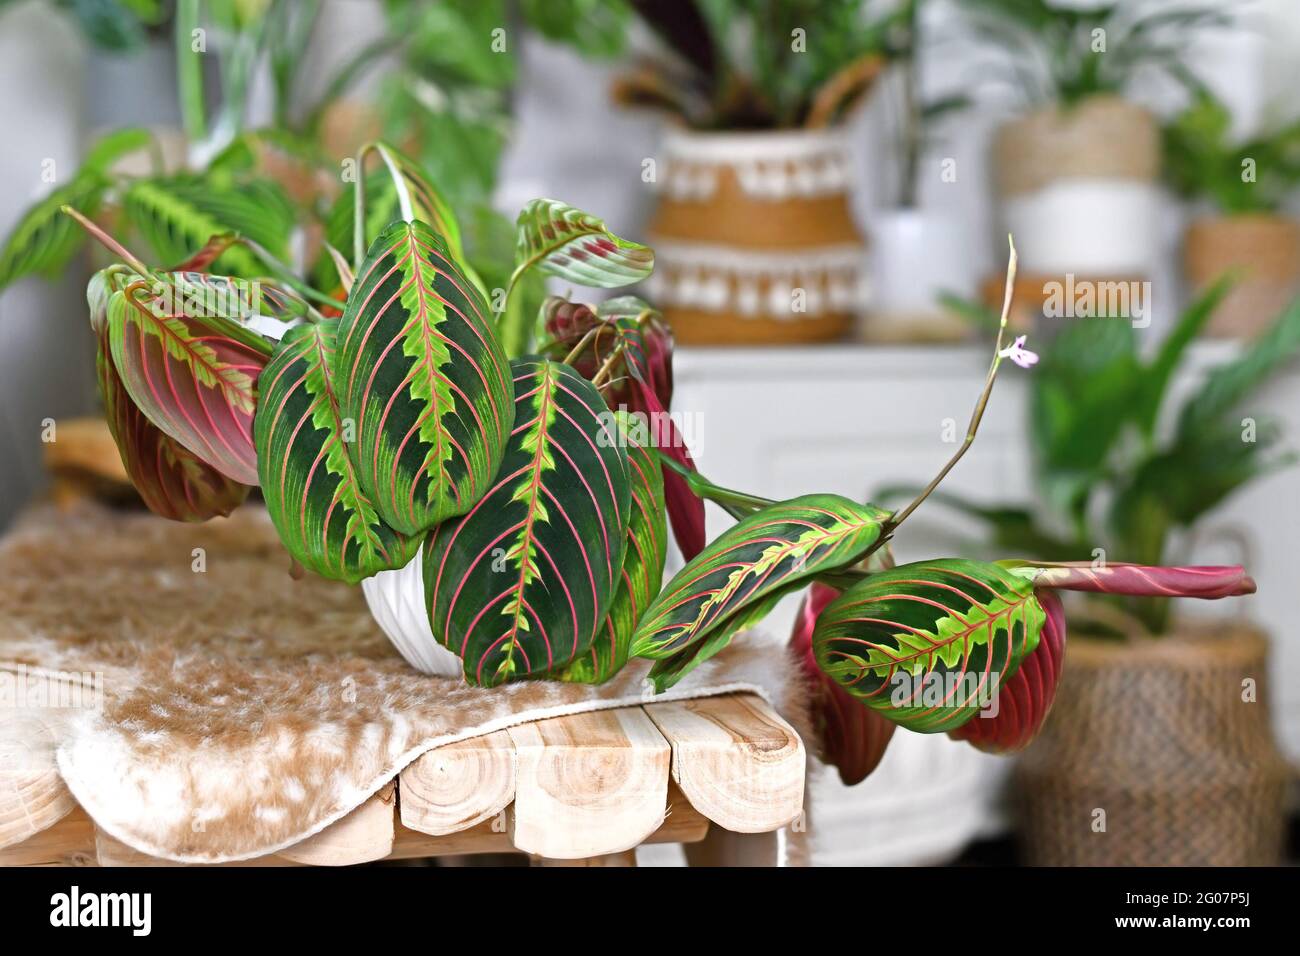 Plante-maison tropicale 'Maranta Leuconeura Fascinator' avec des feuilles à rayures rouges exotiques sur le banc Banque D'Images